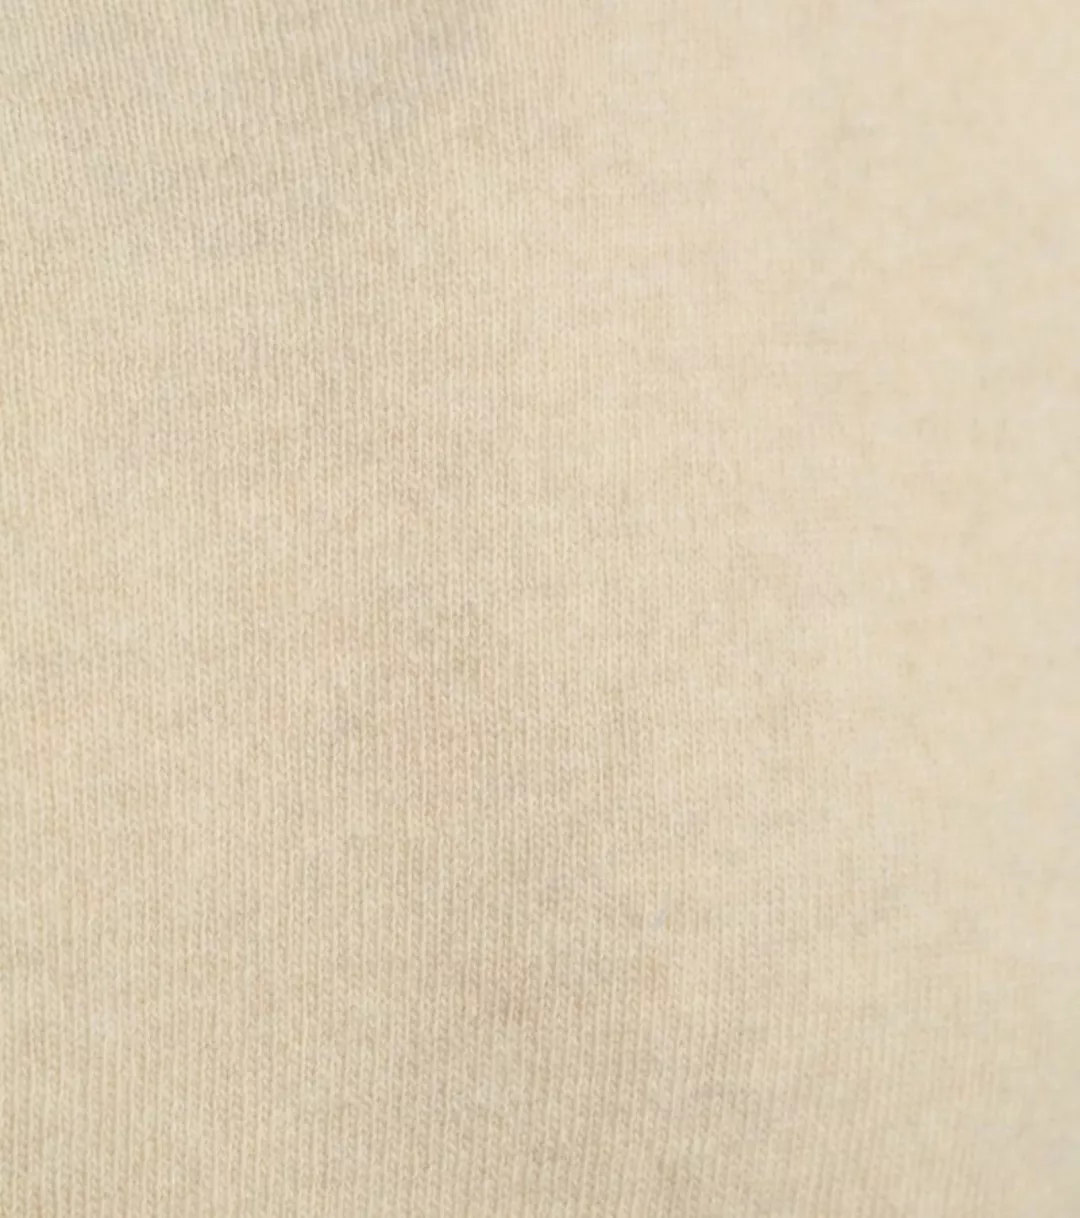 Colorful Standard Merino Pullover Beige - Größe XL günstig online kaufen